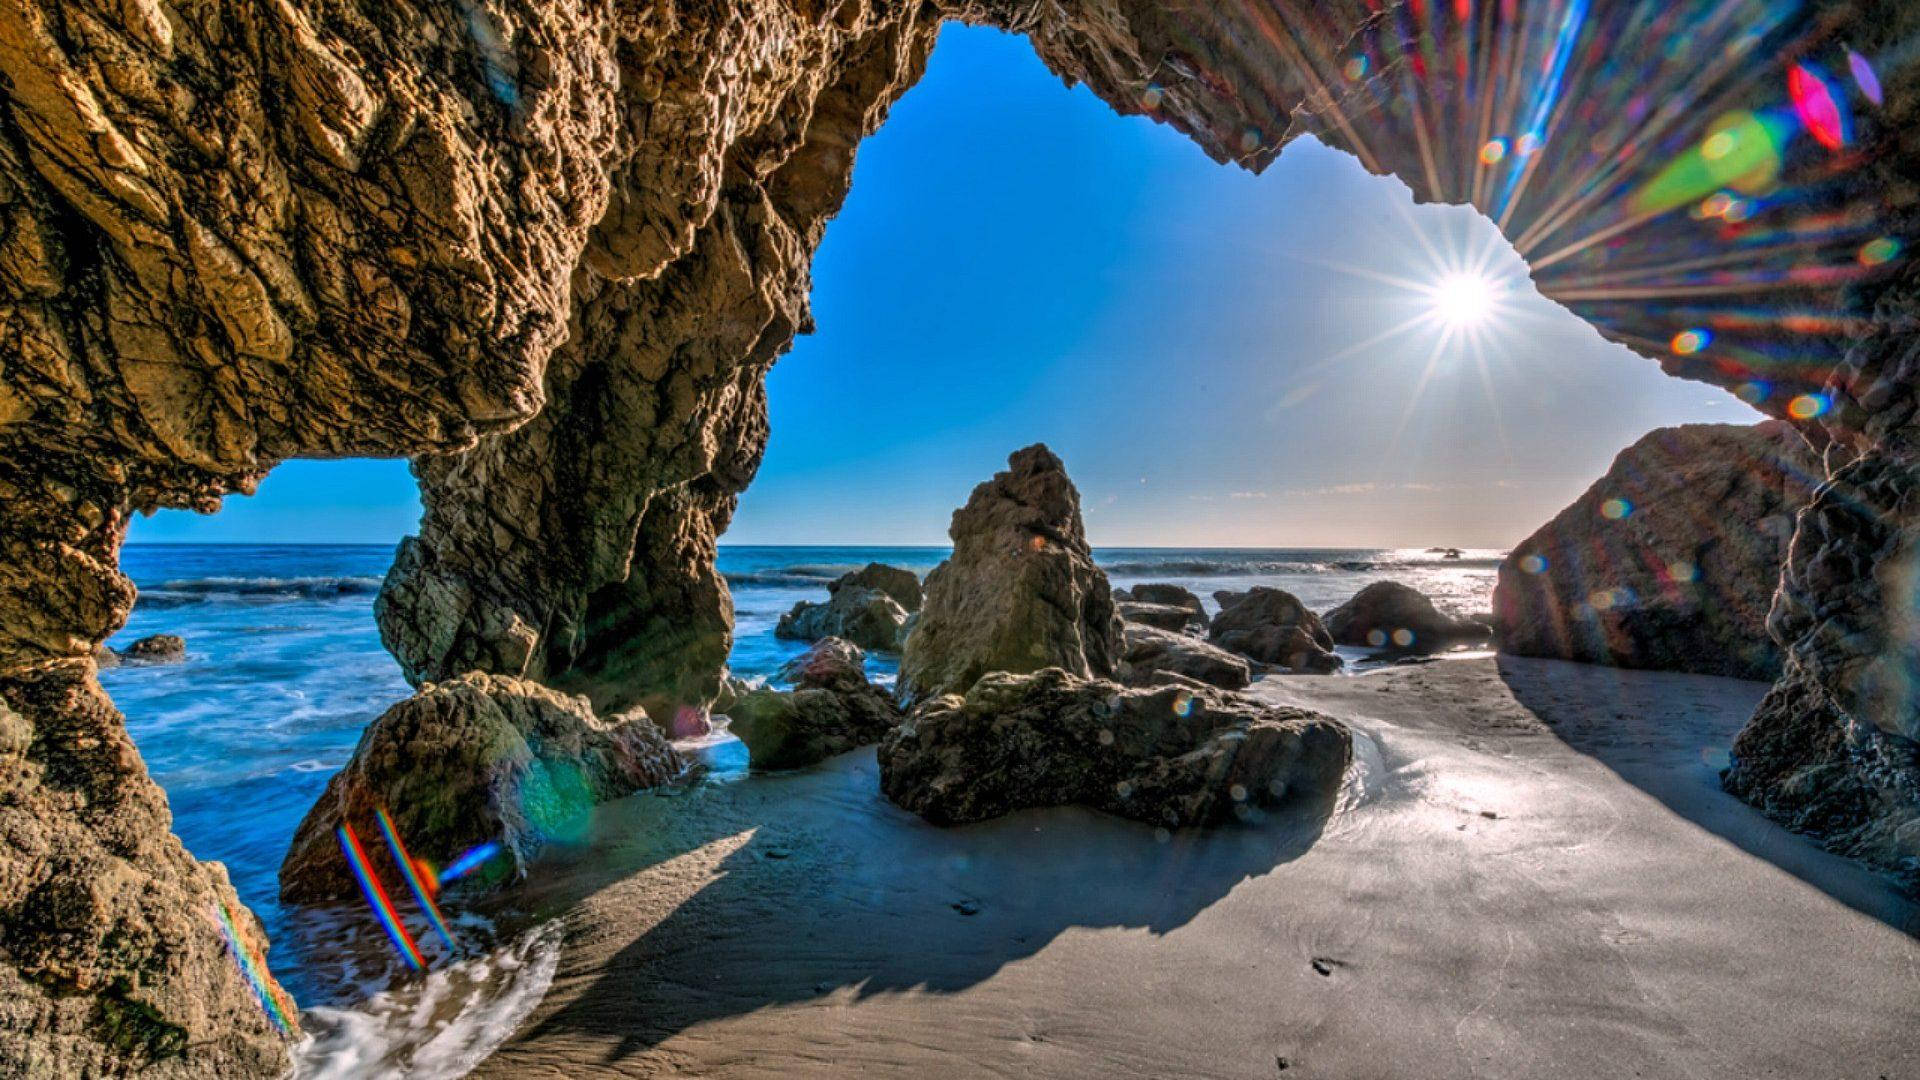 El Matador Malibu Beach Grotte Wallpaper